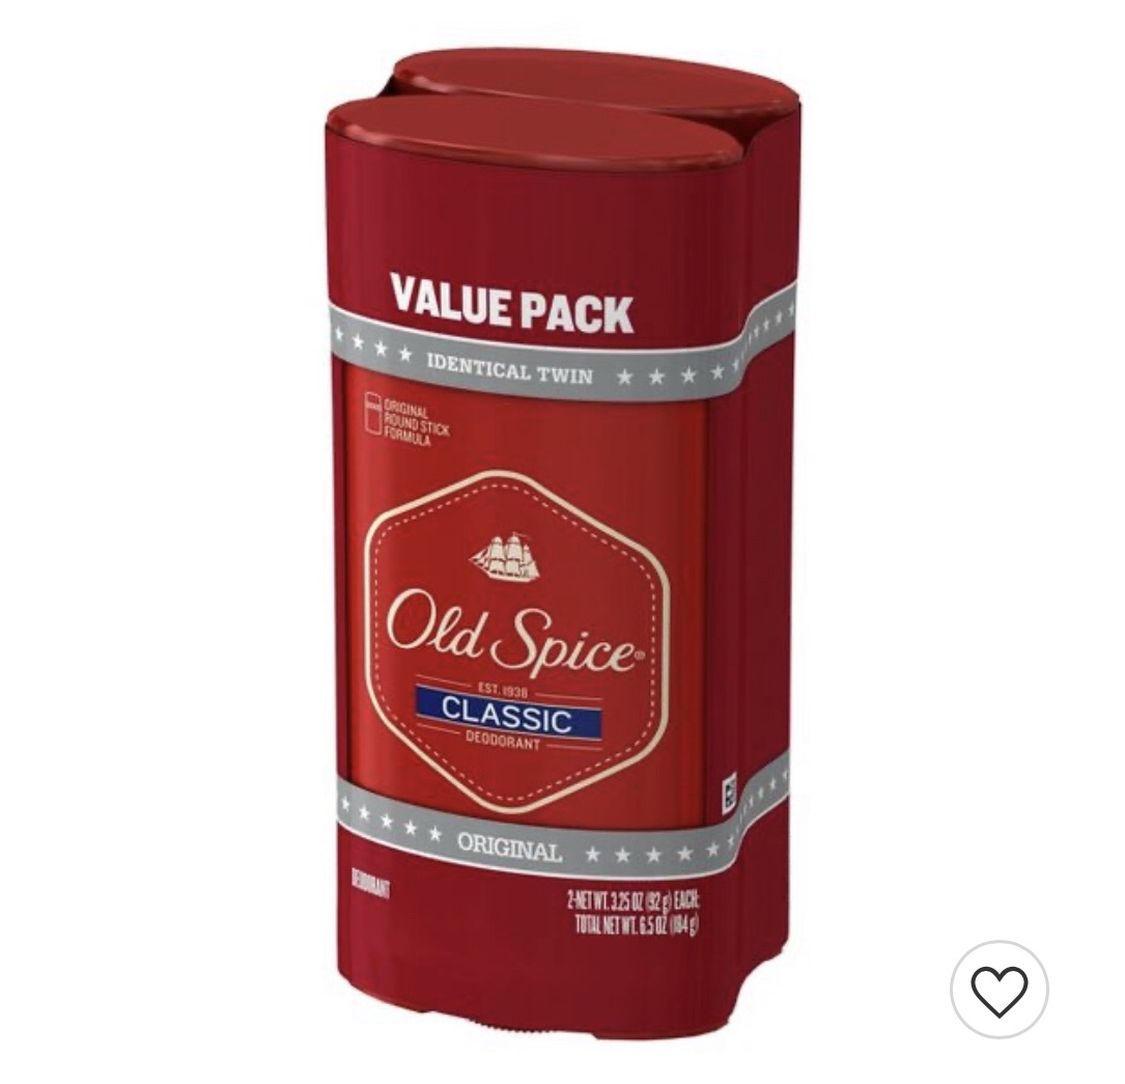 Old Spice Classic Original Deodorant